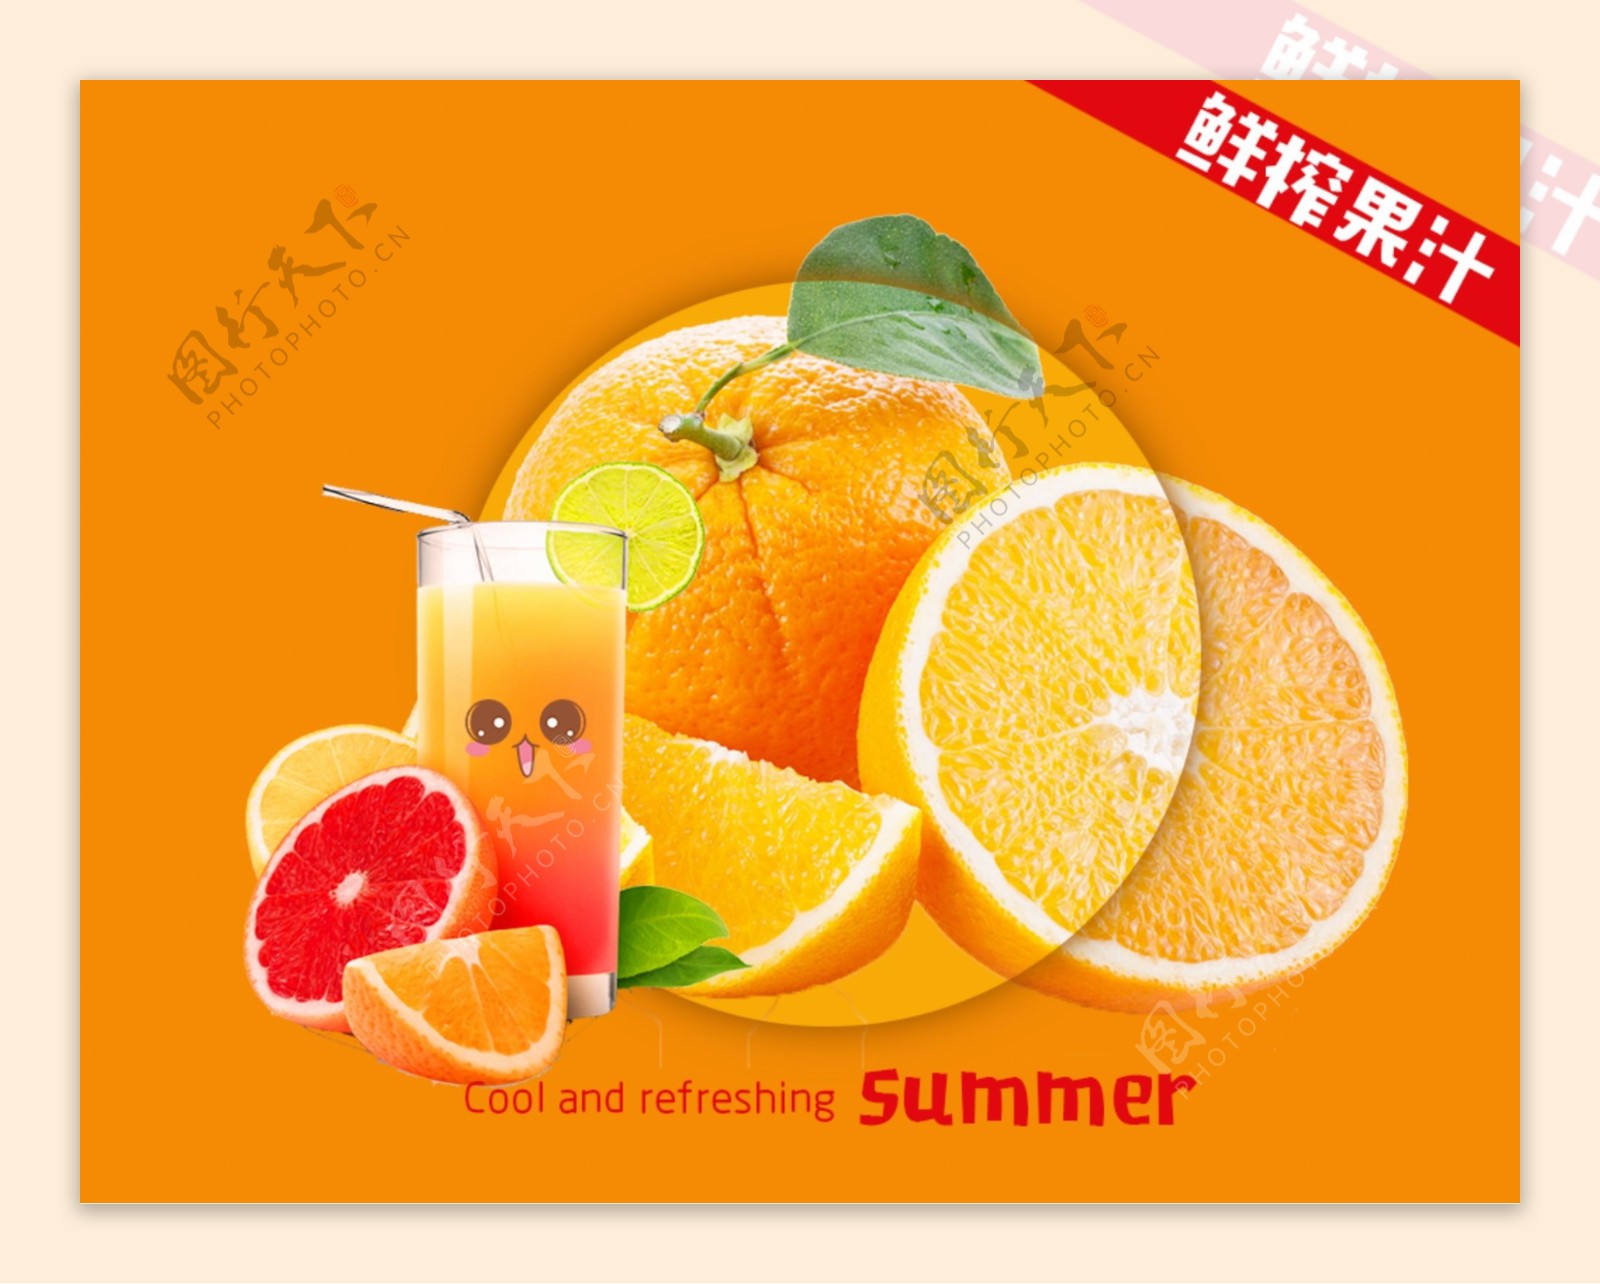 果汁橙汁海报